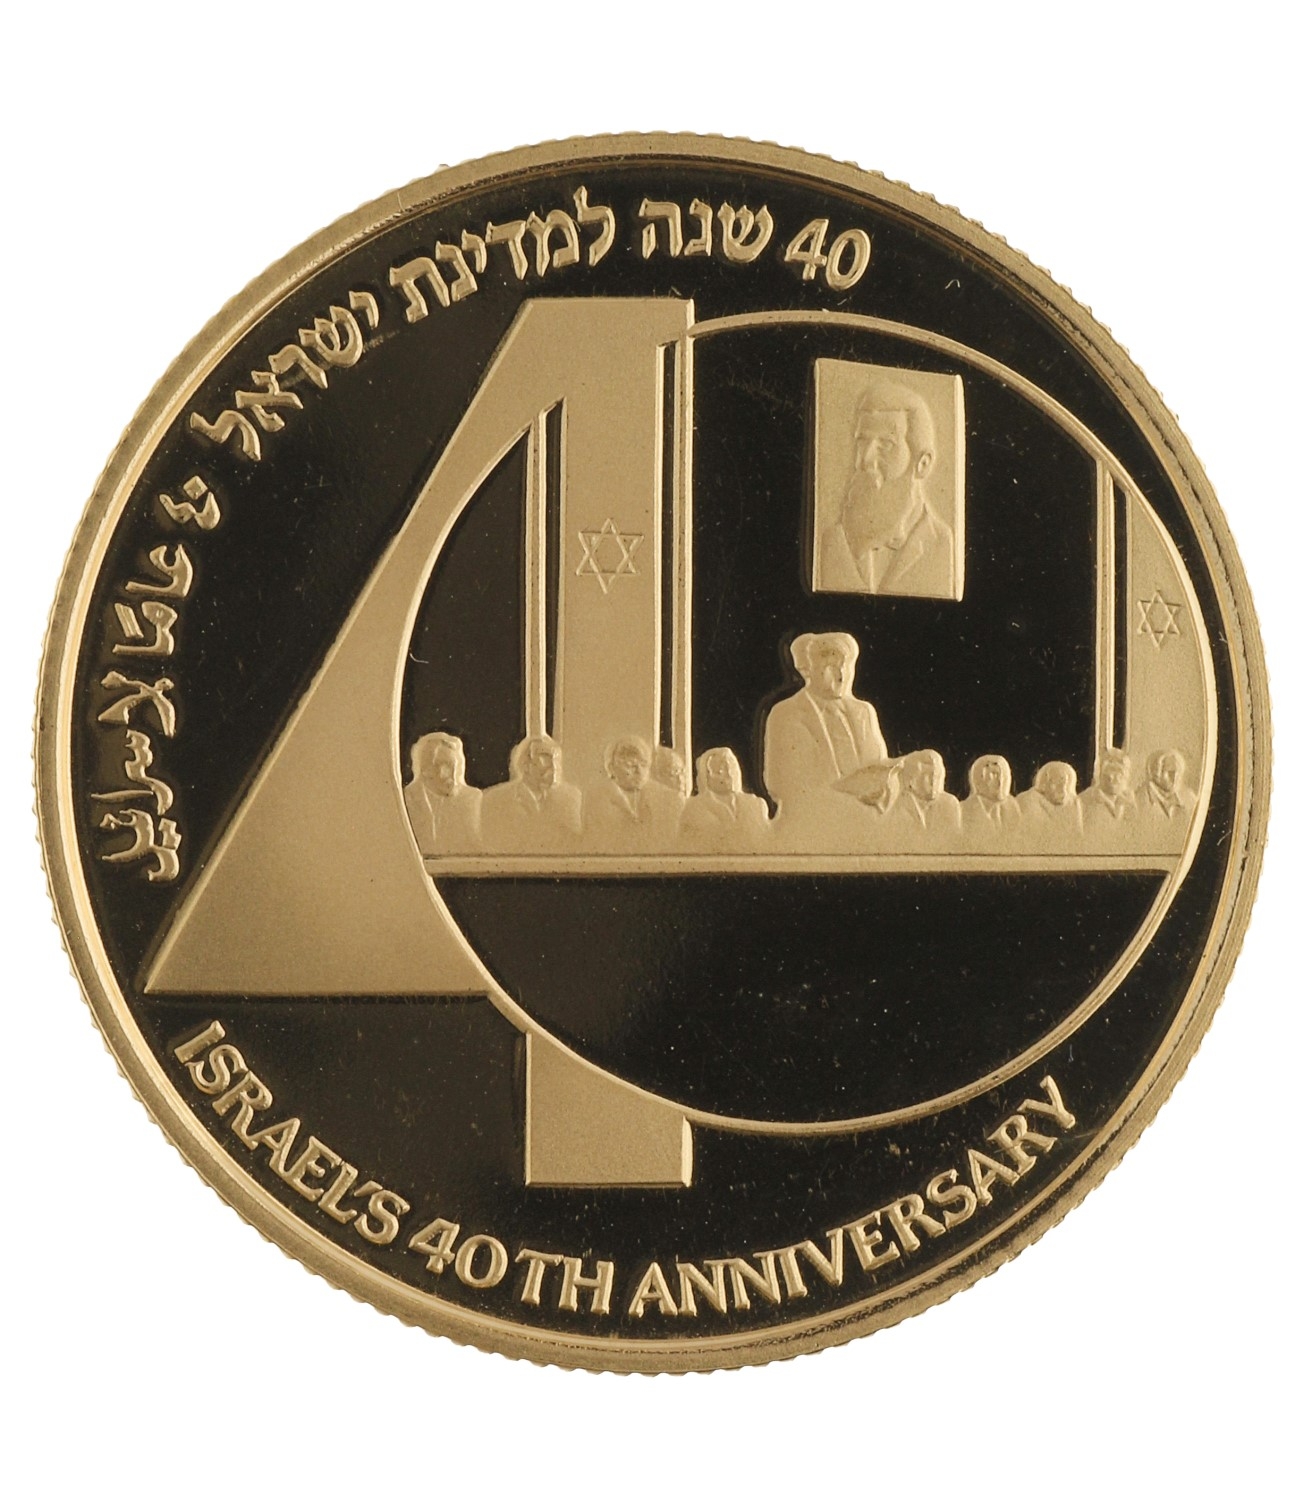 10 Sheqalim - Israel - 1988 (5748) - 1/2oz